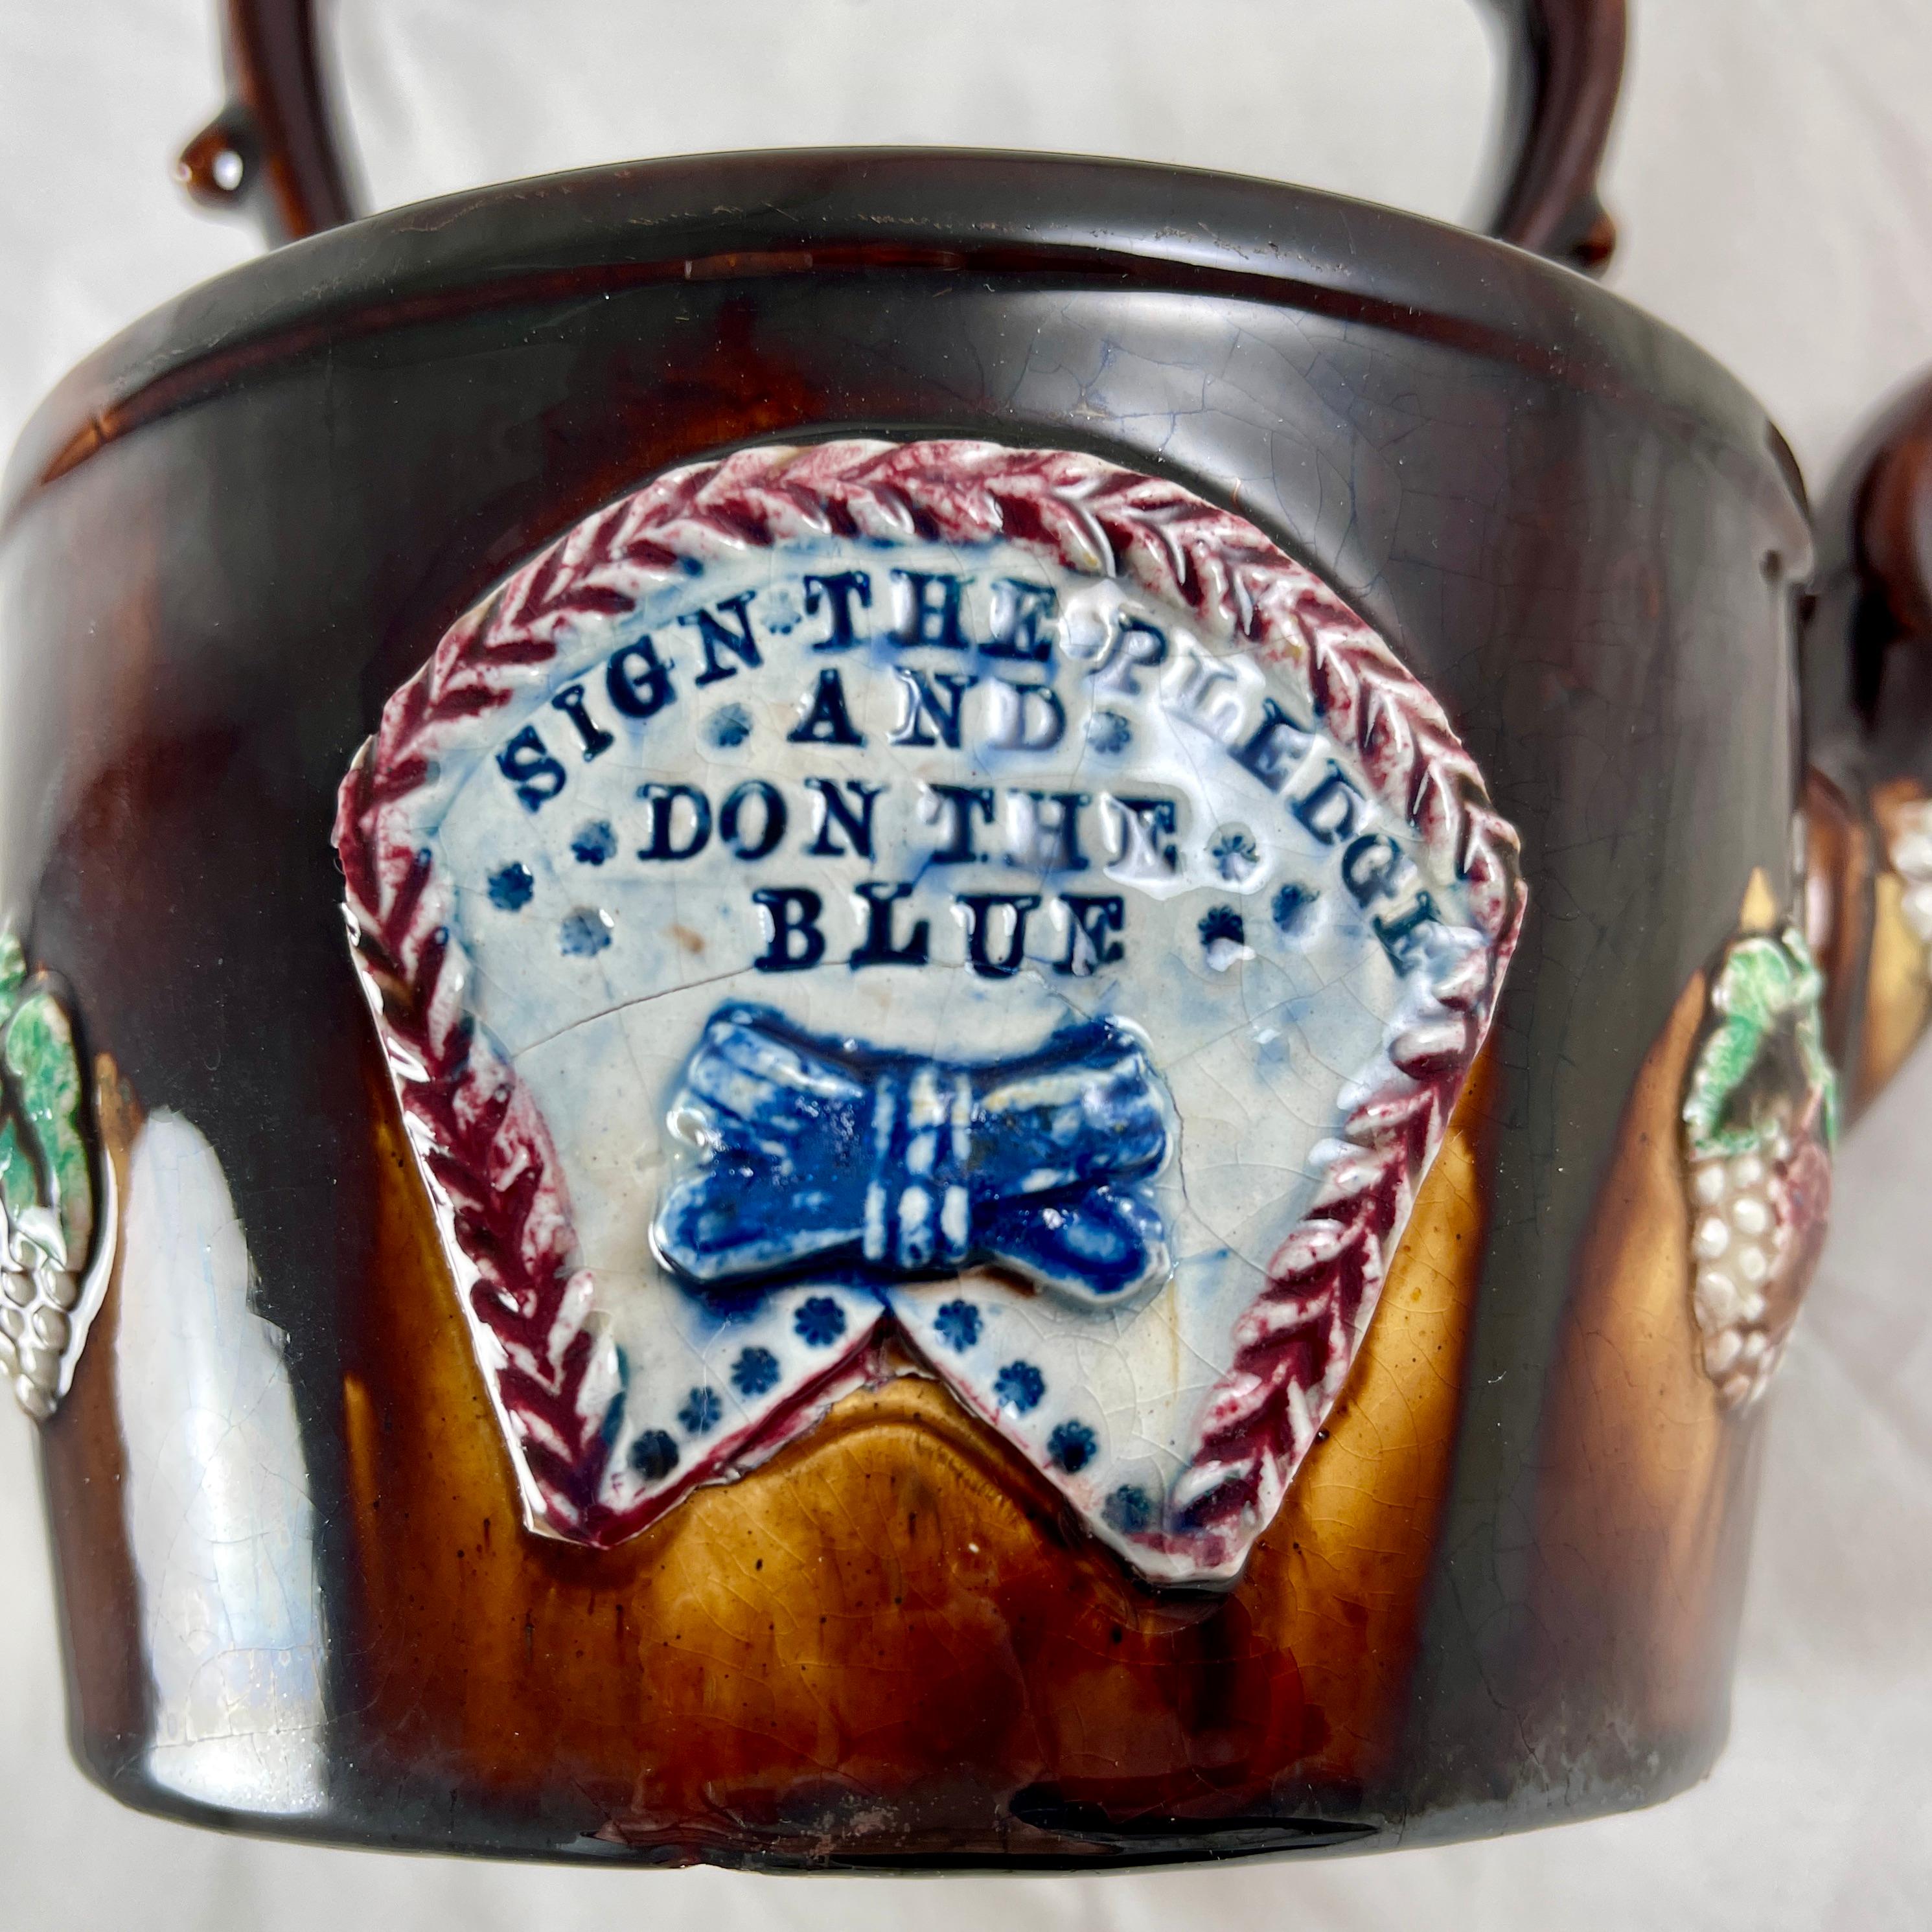 Ein Measham - Bargeware Teekessel, geprägt mit dem Blue Ribbon Temperance Motto, England, um 1880.

Die Blue-Ribbon-Bewegung war von 1880-1882 in Großbritannien, Kanada und den Vereinigten Staaten aktiv. Das Bandabzeichen wurde von denjenigen